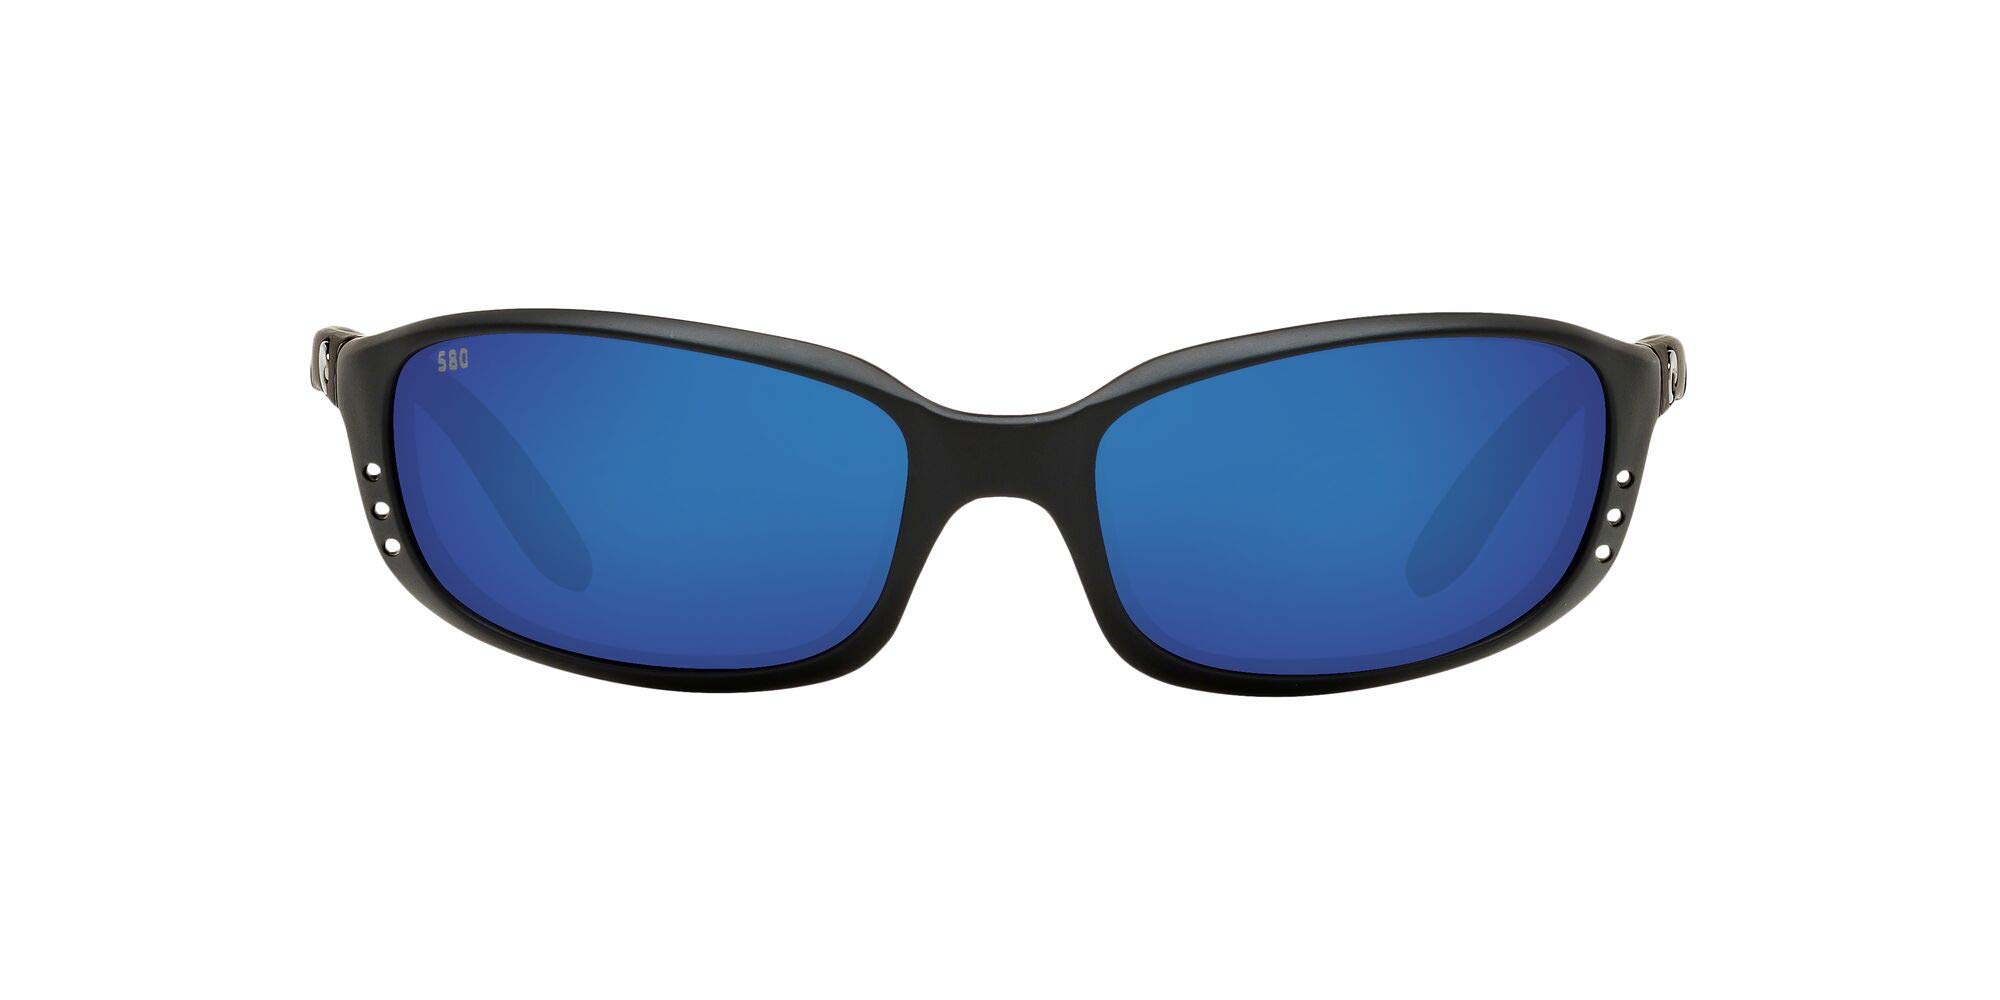 Costa Del Mar Mens Brine Polarized Oval Sunglasses - Matte Black/Blue Mirror - 59 mm